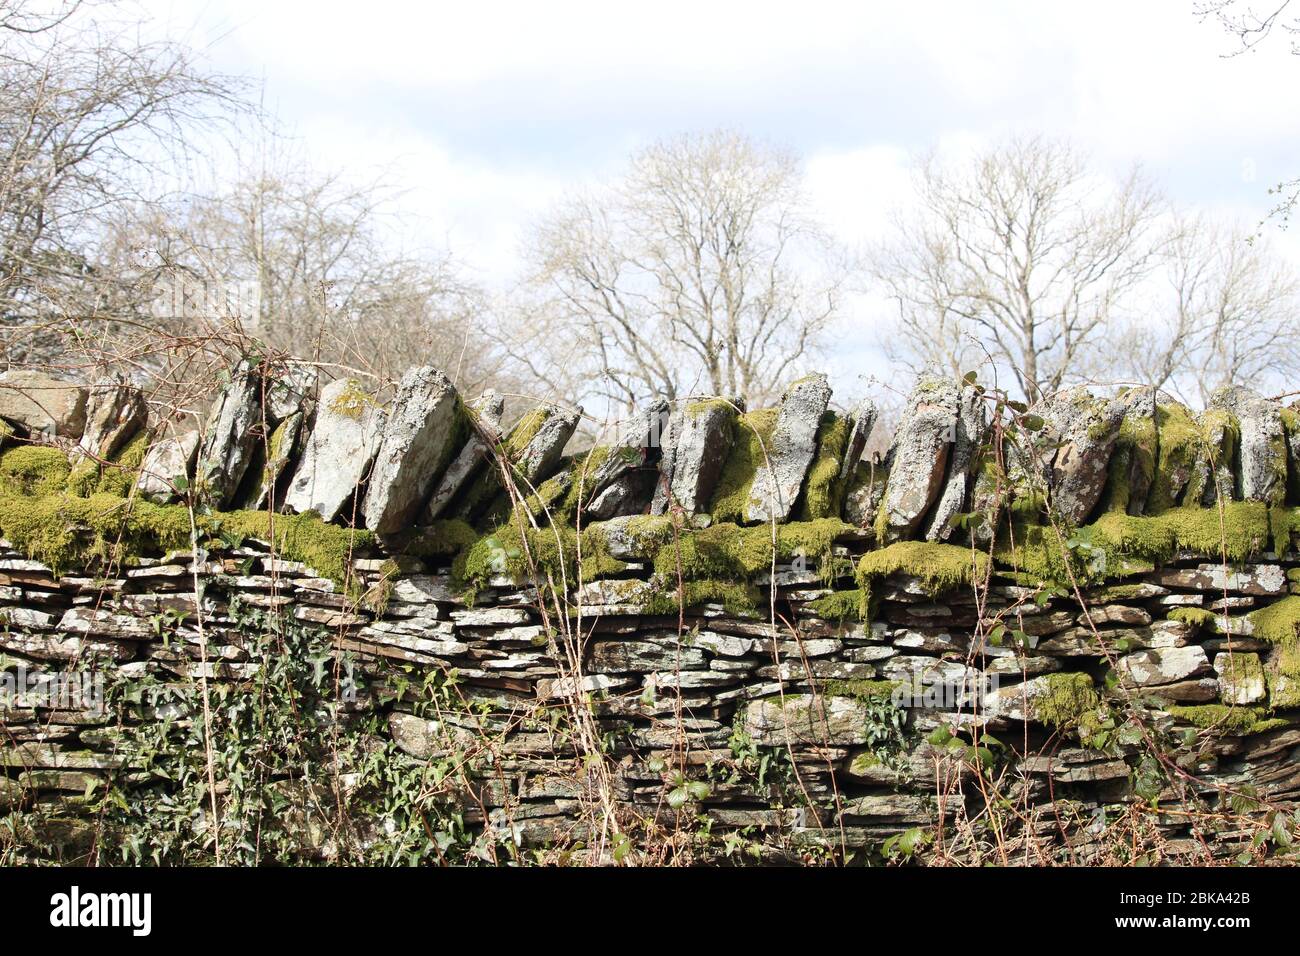 Una fotografia di un muro di pietra a secco ricoperto di muschio. Strati e strati di pietre antiche accatastate con piante davanti e un bosco sullo sfondo. Foto Stock